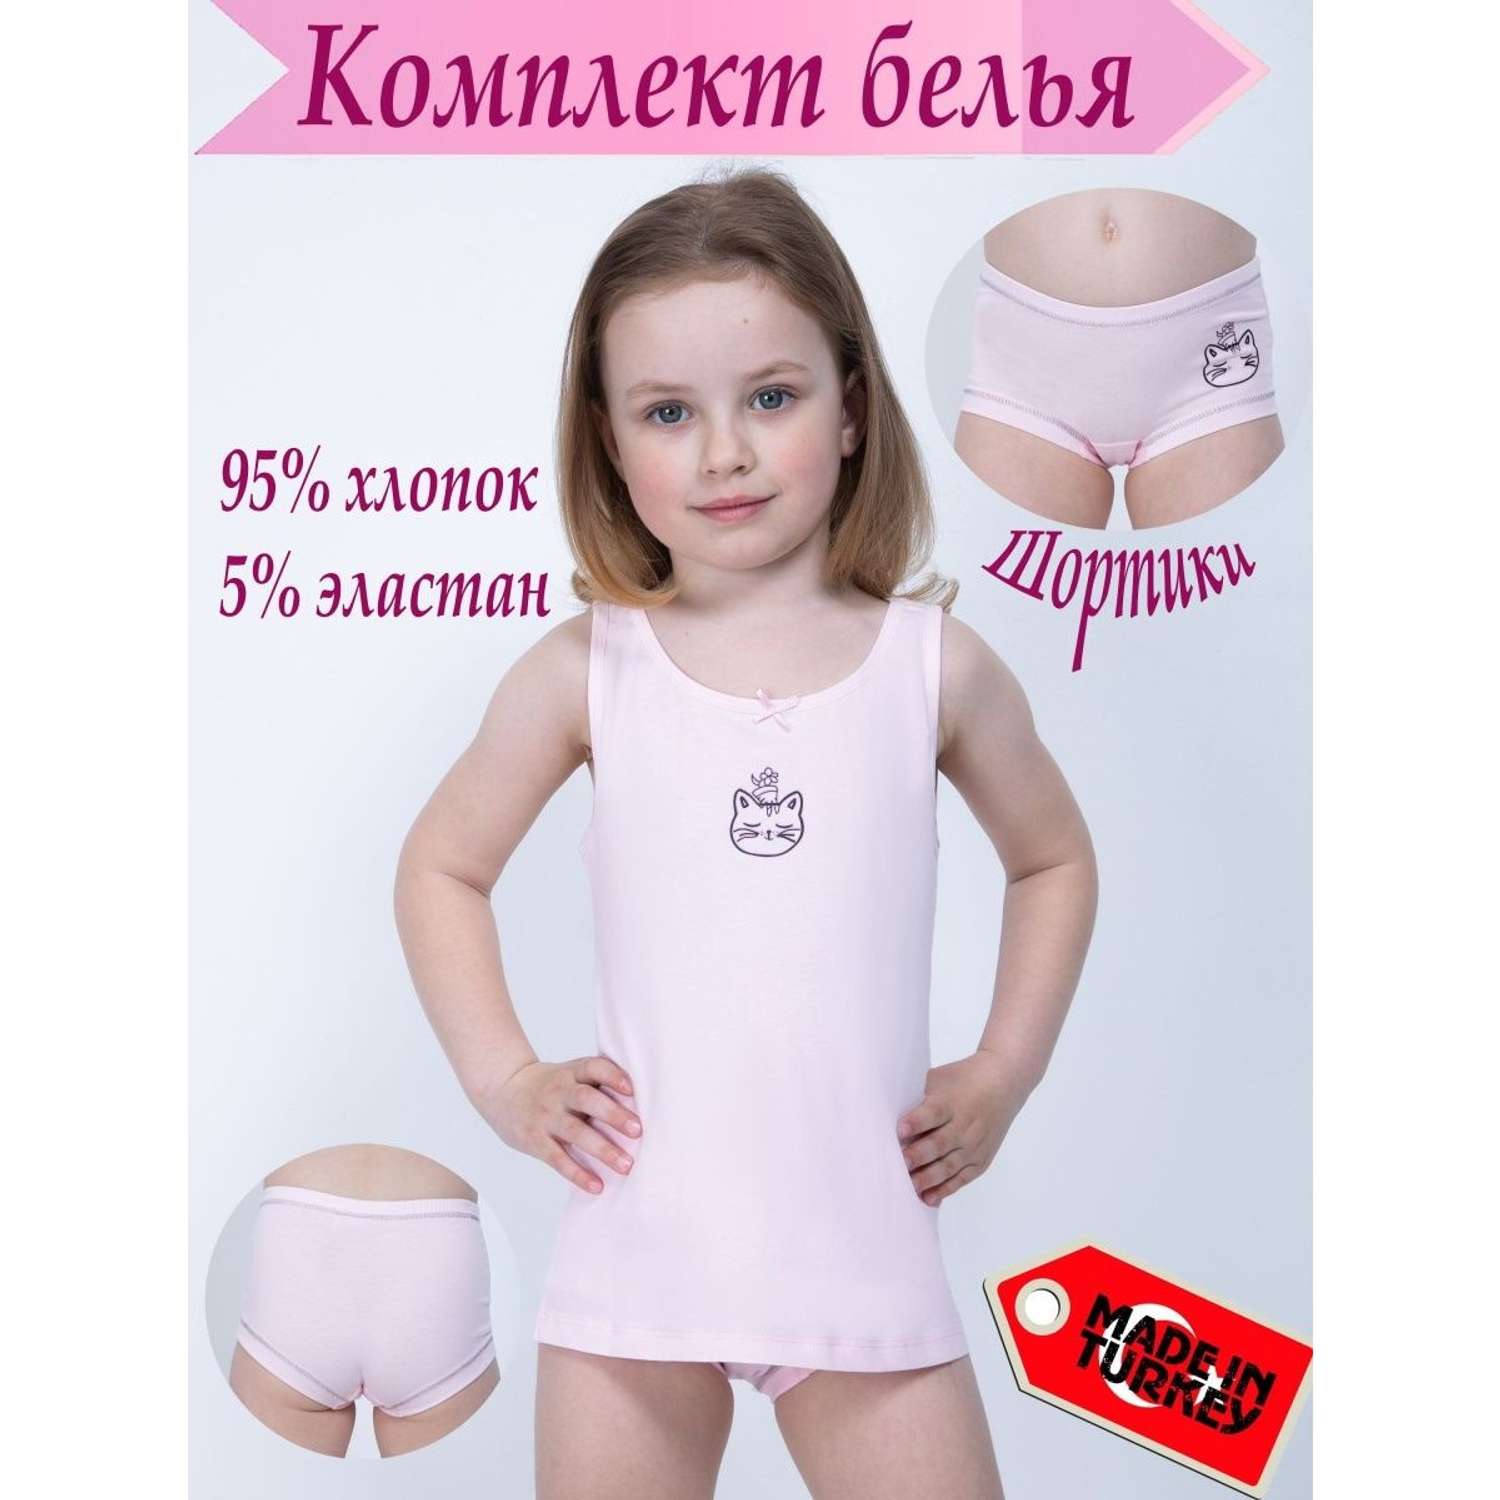 Комплект белья M-BABY Ктол-9013/1/розовый/кот/шорты - фото 2